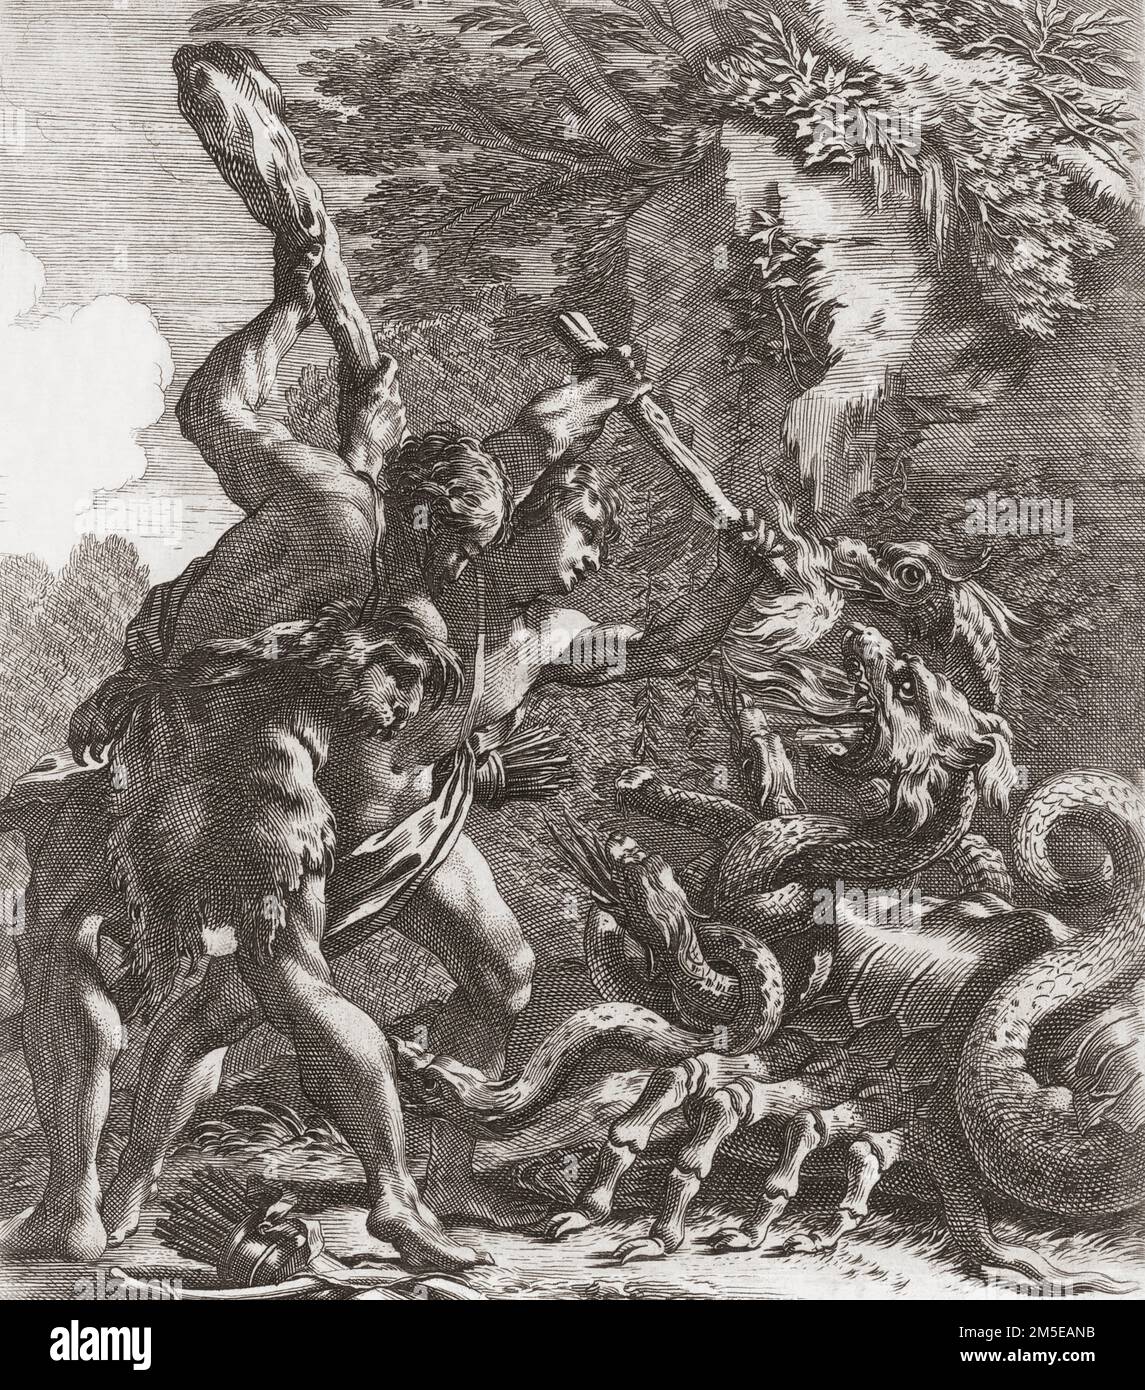 Hercules tue l'Hydra, le deuxième des douze laboratoires d'Hercules. Le neveu d'Hercules, IOLAUS, combat avec lui contre le monstre. D'une impression de Michel Dorigny après la peinture de Simon Vouet. Banque D'Images